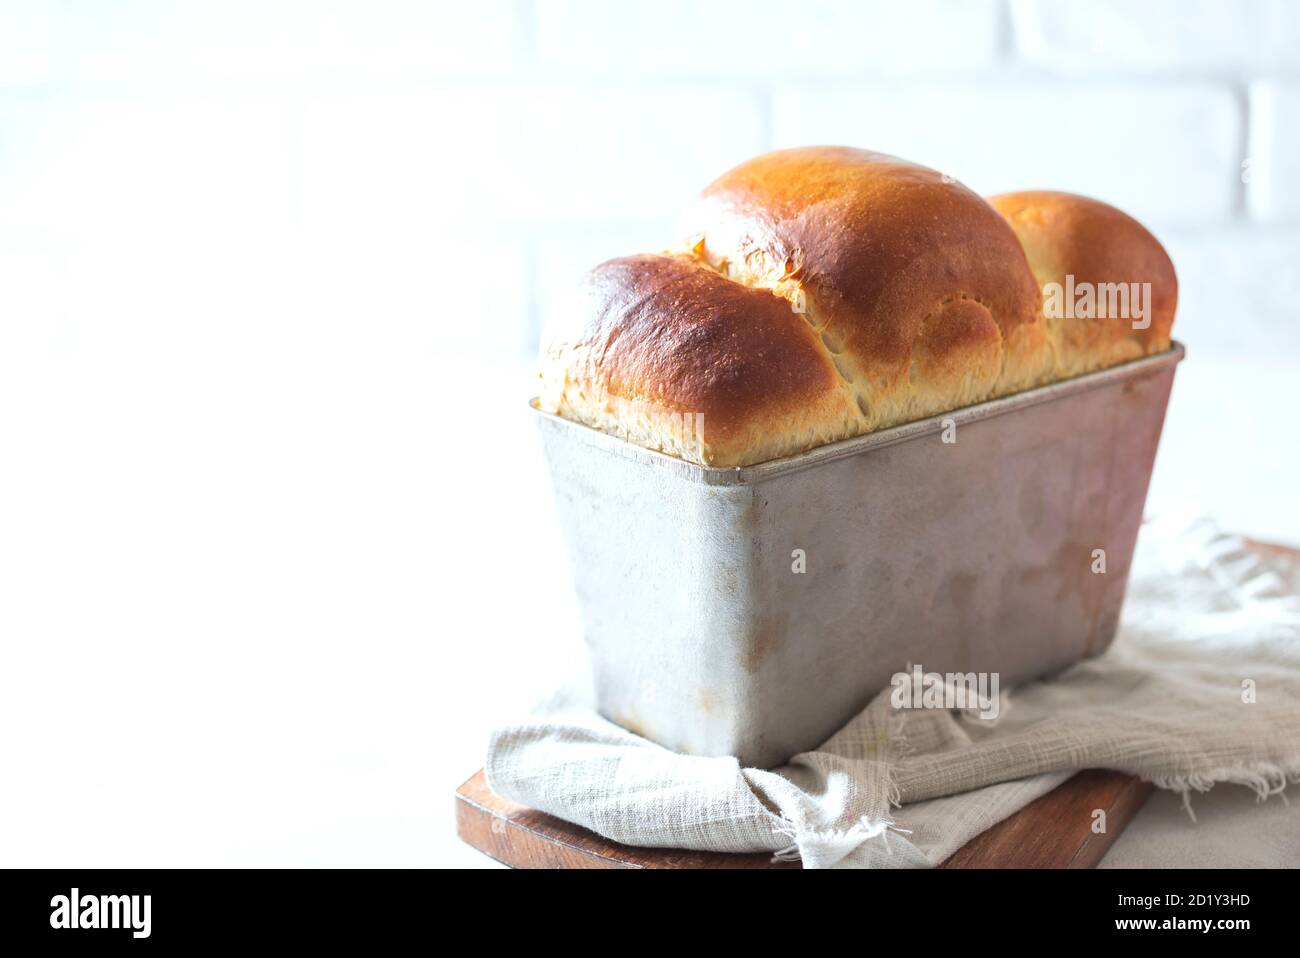 Japanese brioche, Japanese milk bread. Homemade baking. Fresh homemade crisp bread. Stock Photo